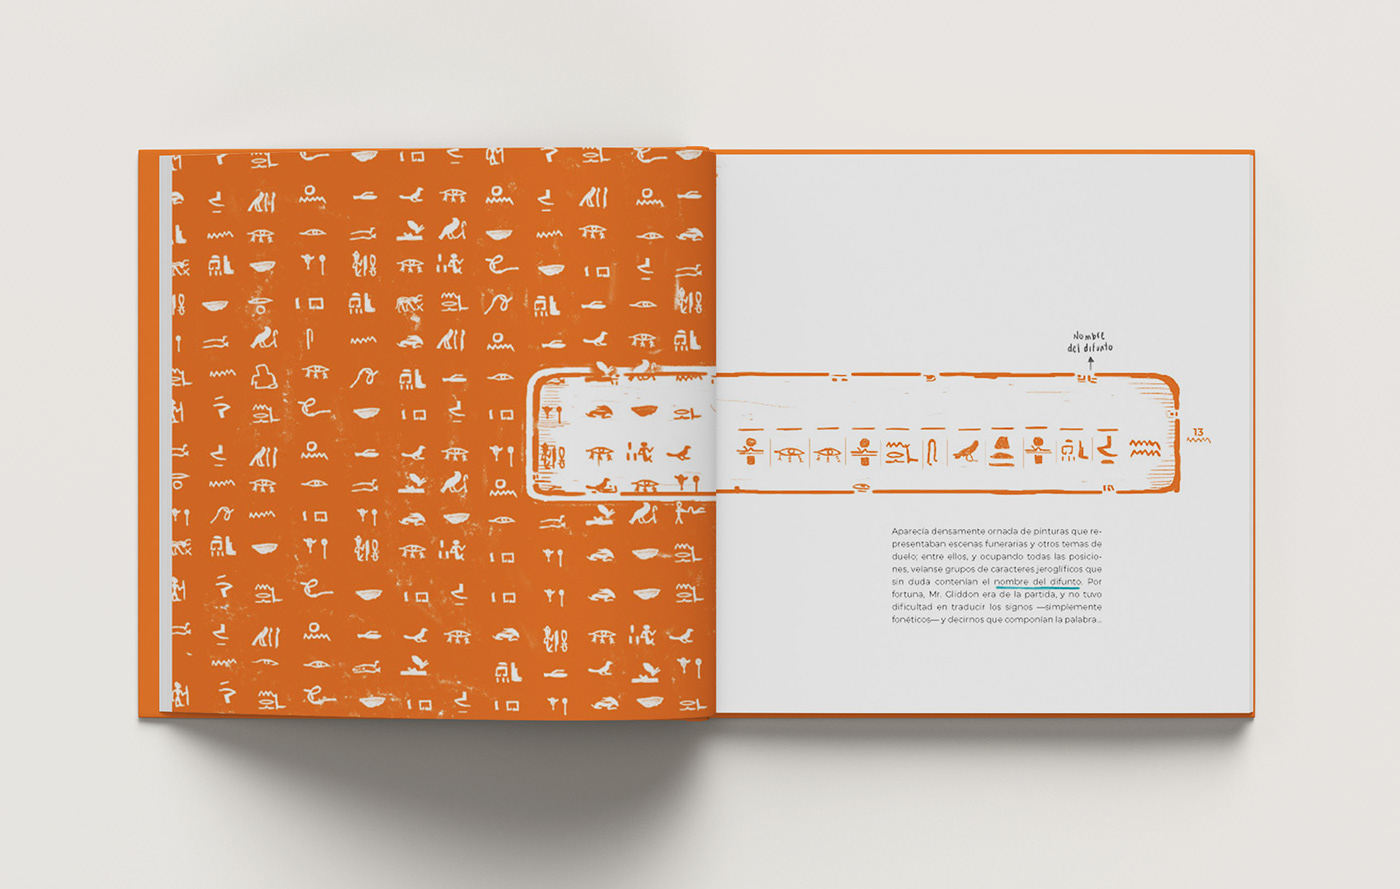 book design diagramación Diseño editorial diseño gráfico Edgar Allan Poe editorial design  graphic design  story book design